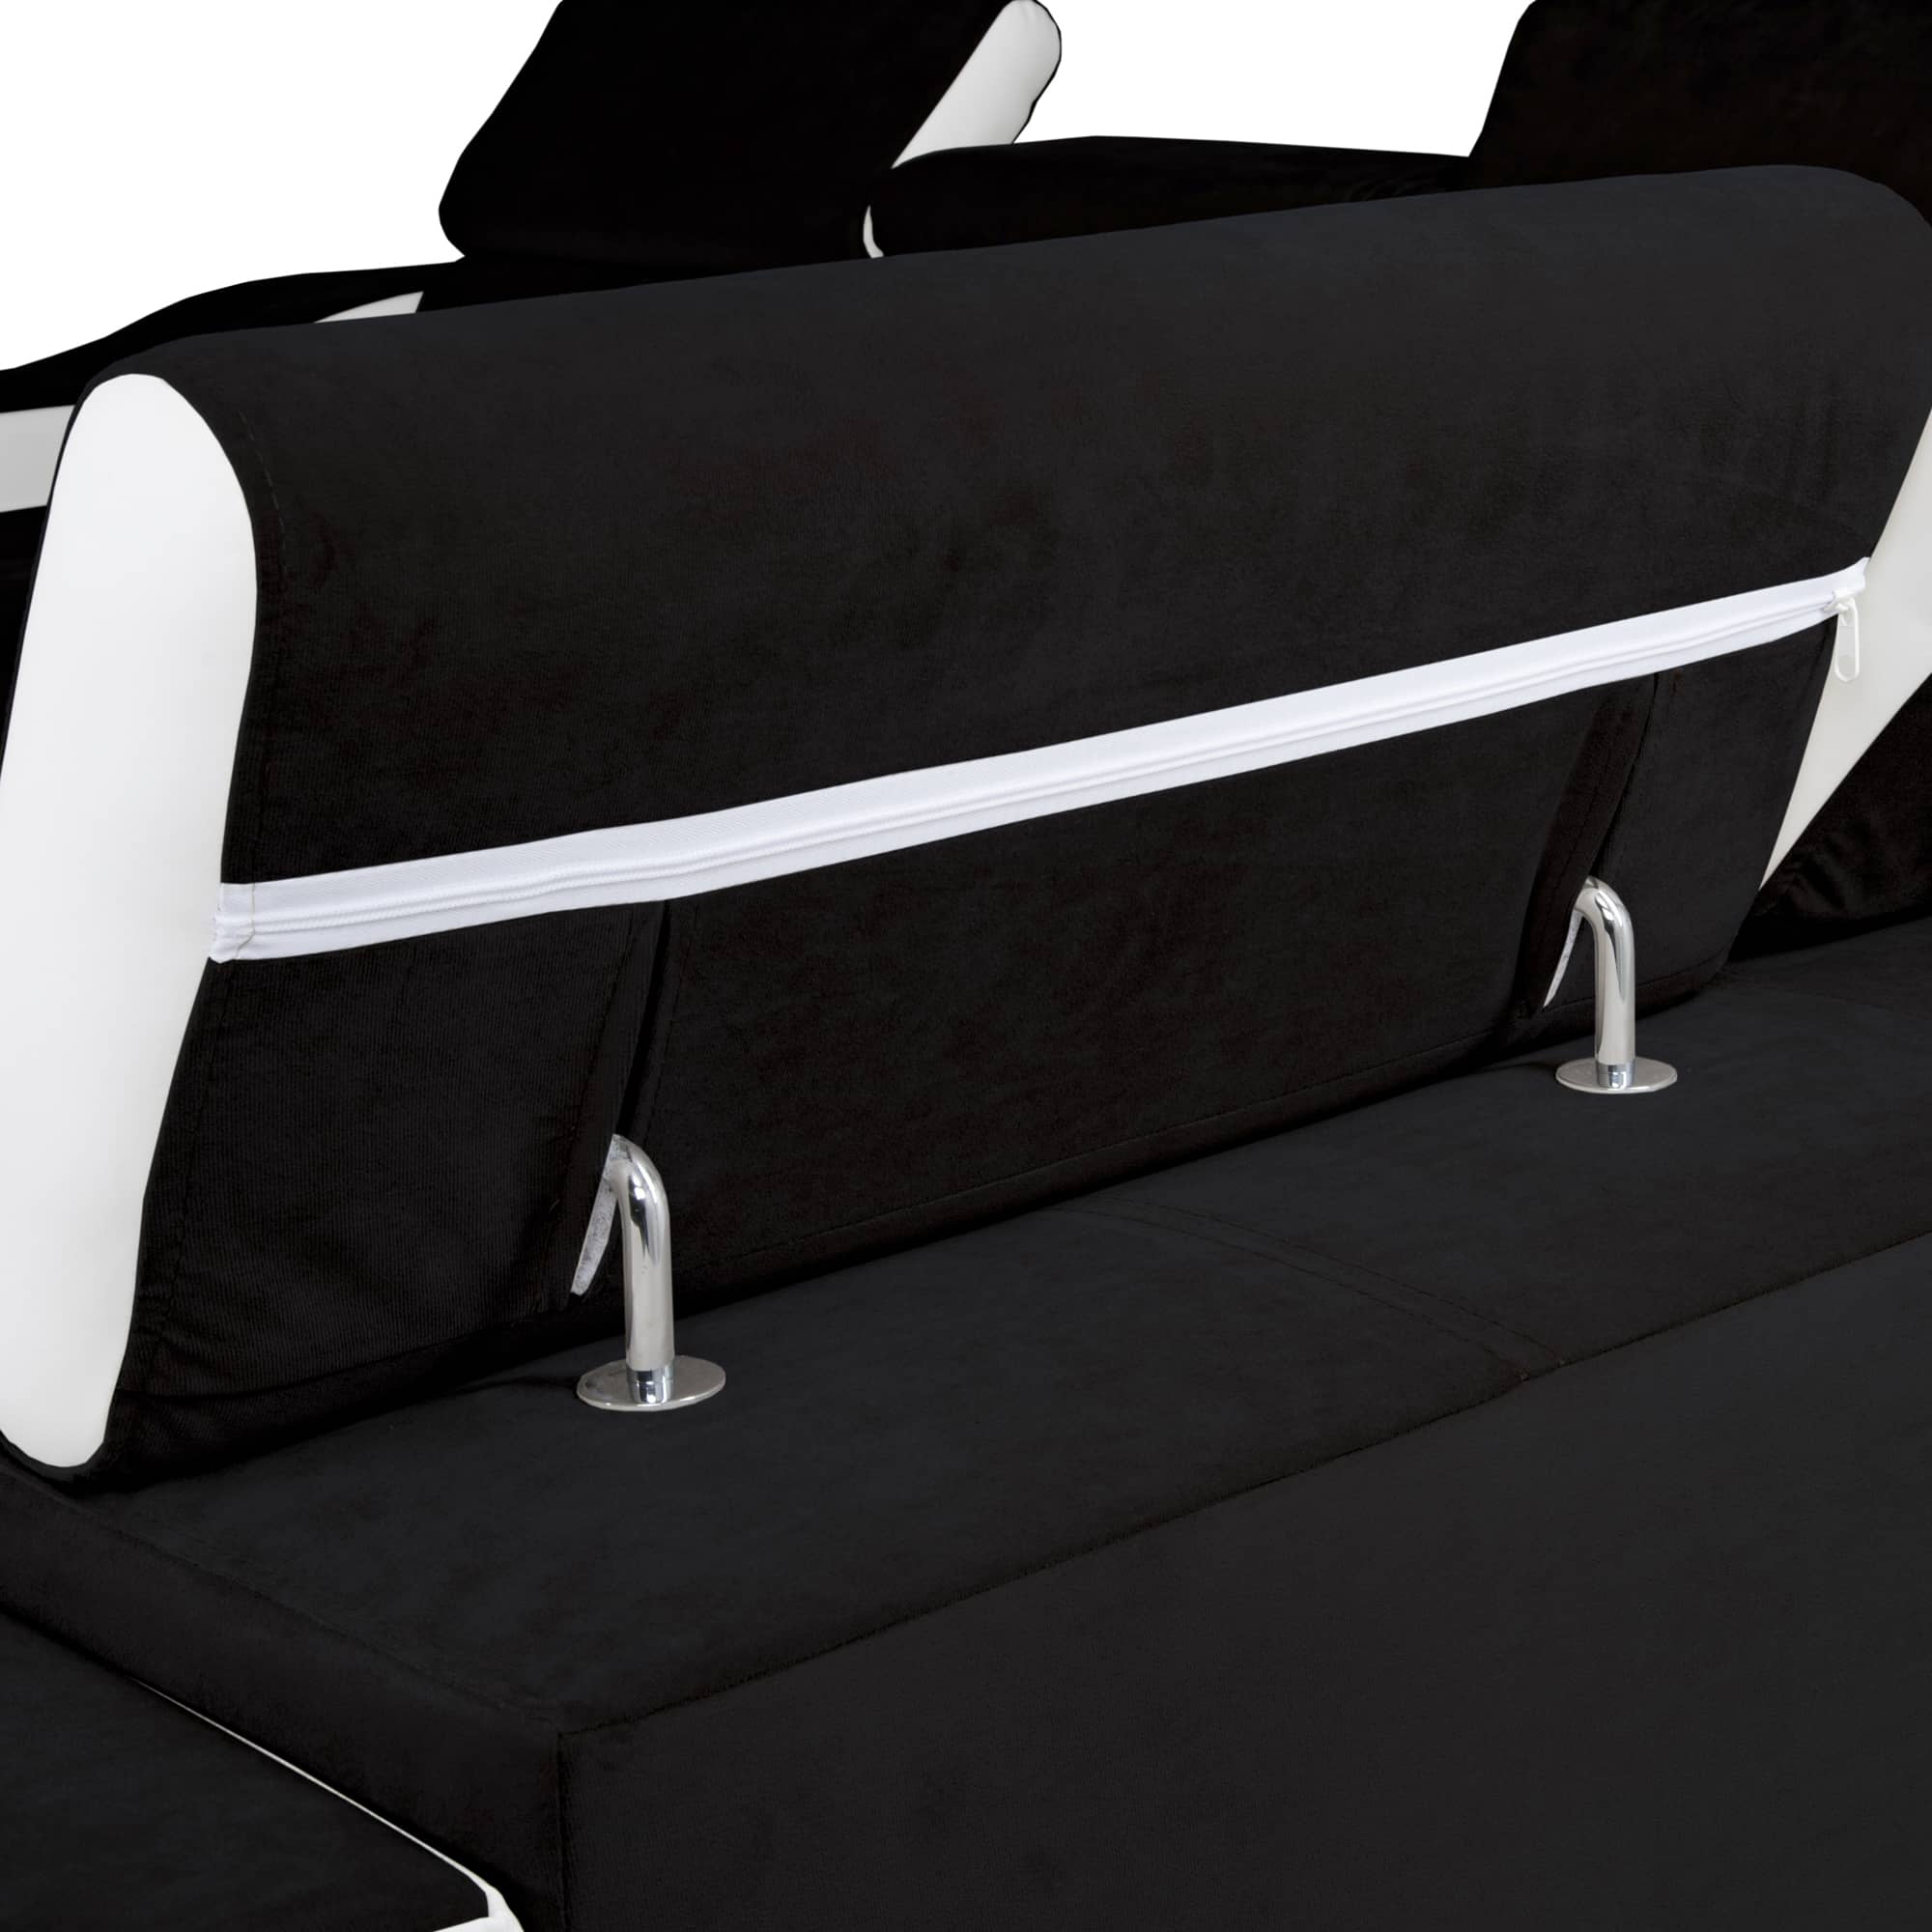 Canapé d’angle convertible réversible en tissu noir et simili blanc